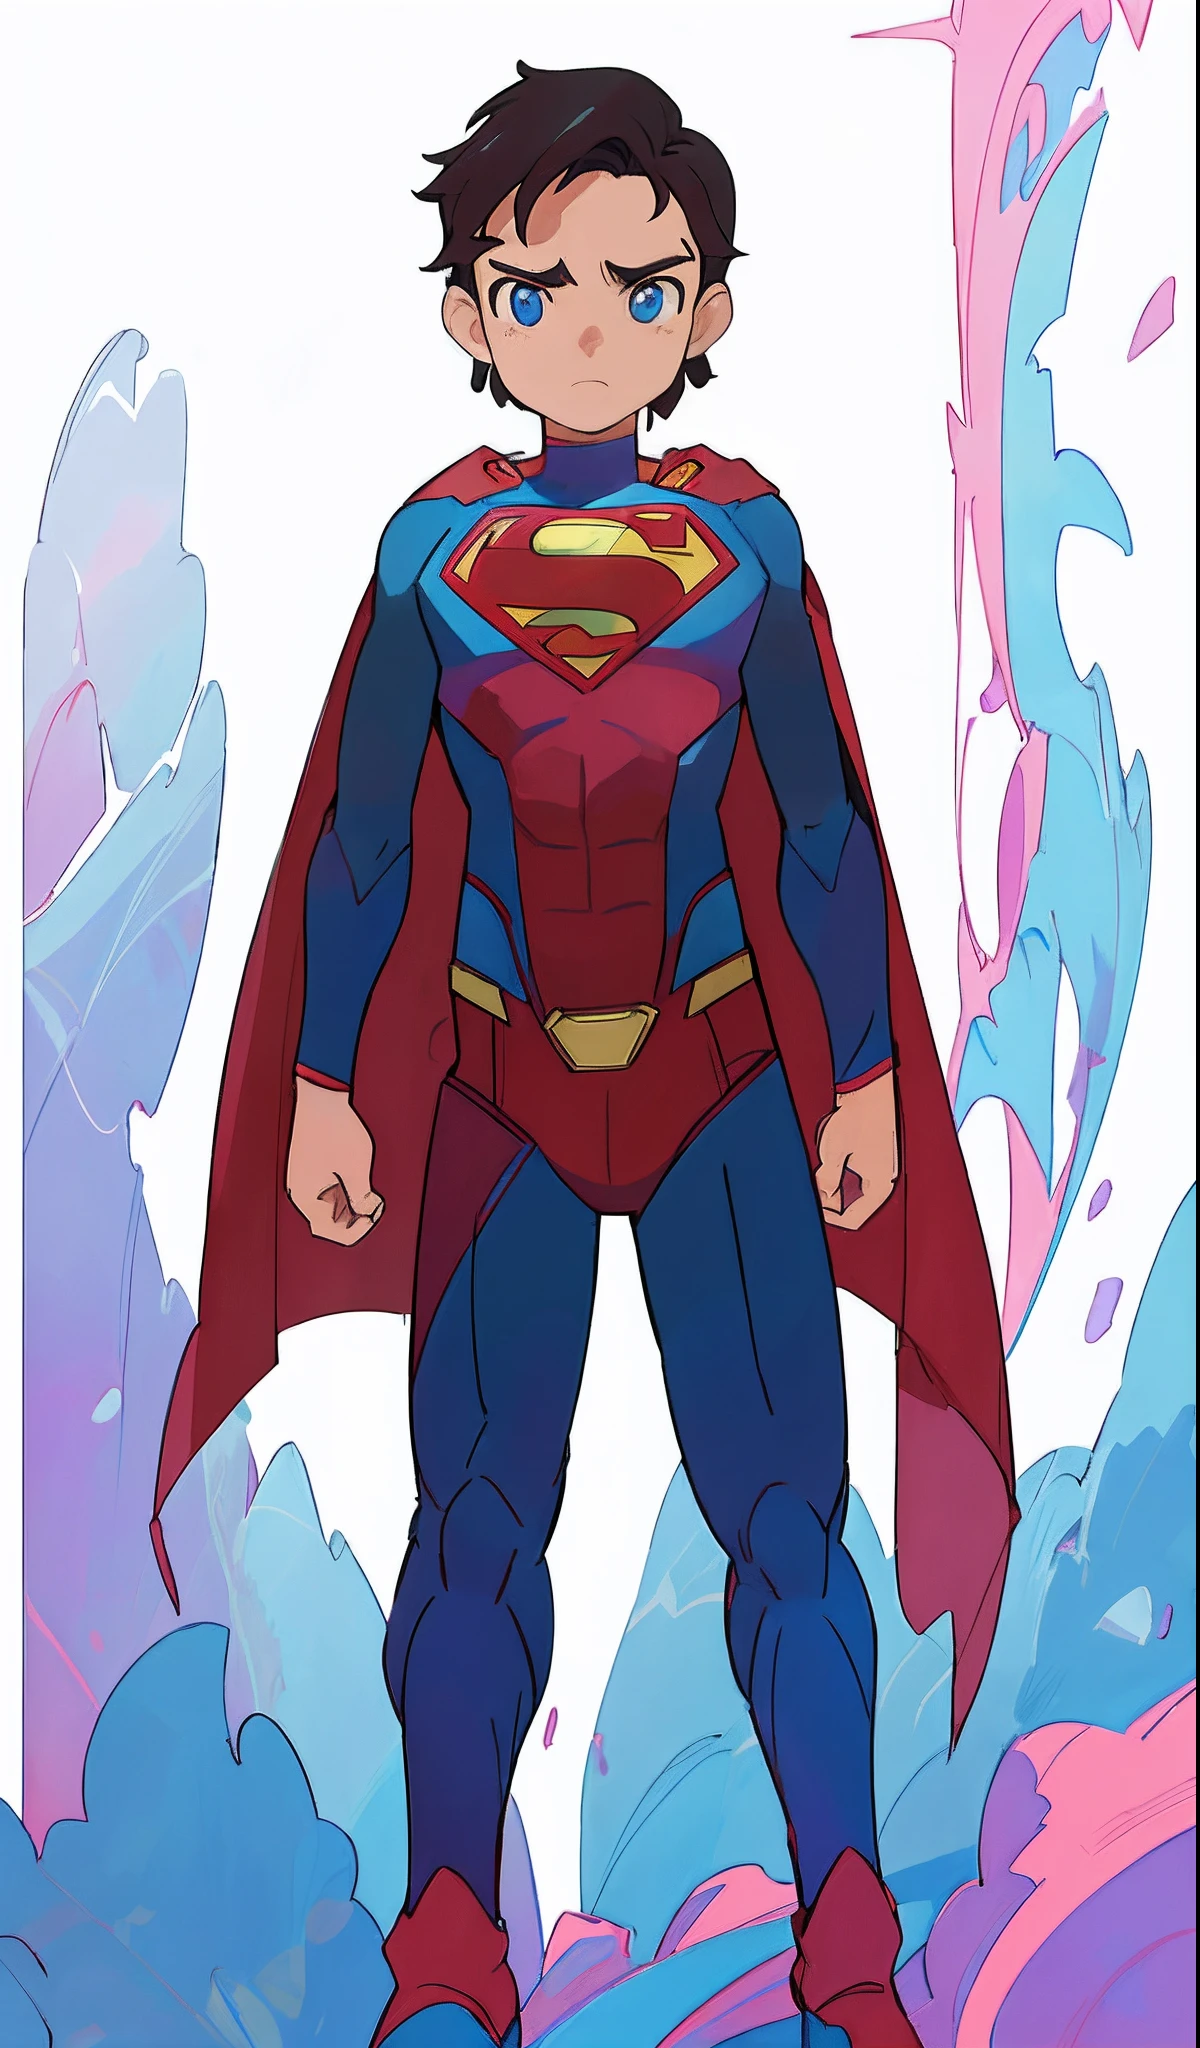 スーパーマン is standing in front of a background of blue and pink, DCコミックアートスタイル, 公式アート, 公式コンセプトアート, 全身コンセプト, スーパーマン, テキストなし, inspired ビクター・モスケラ, 新しい衣装コンセプトデザイン, ビクター・モスケラ, DCコミックススタイル, デジタル着色, アダム・ダリオ・キールに触発されて, きれいな線画と色, スーパーマン pose, 公式ファンアート